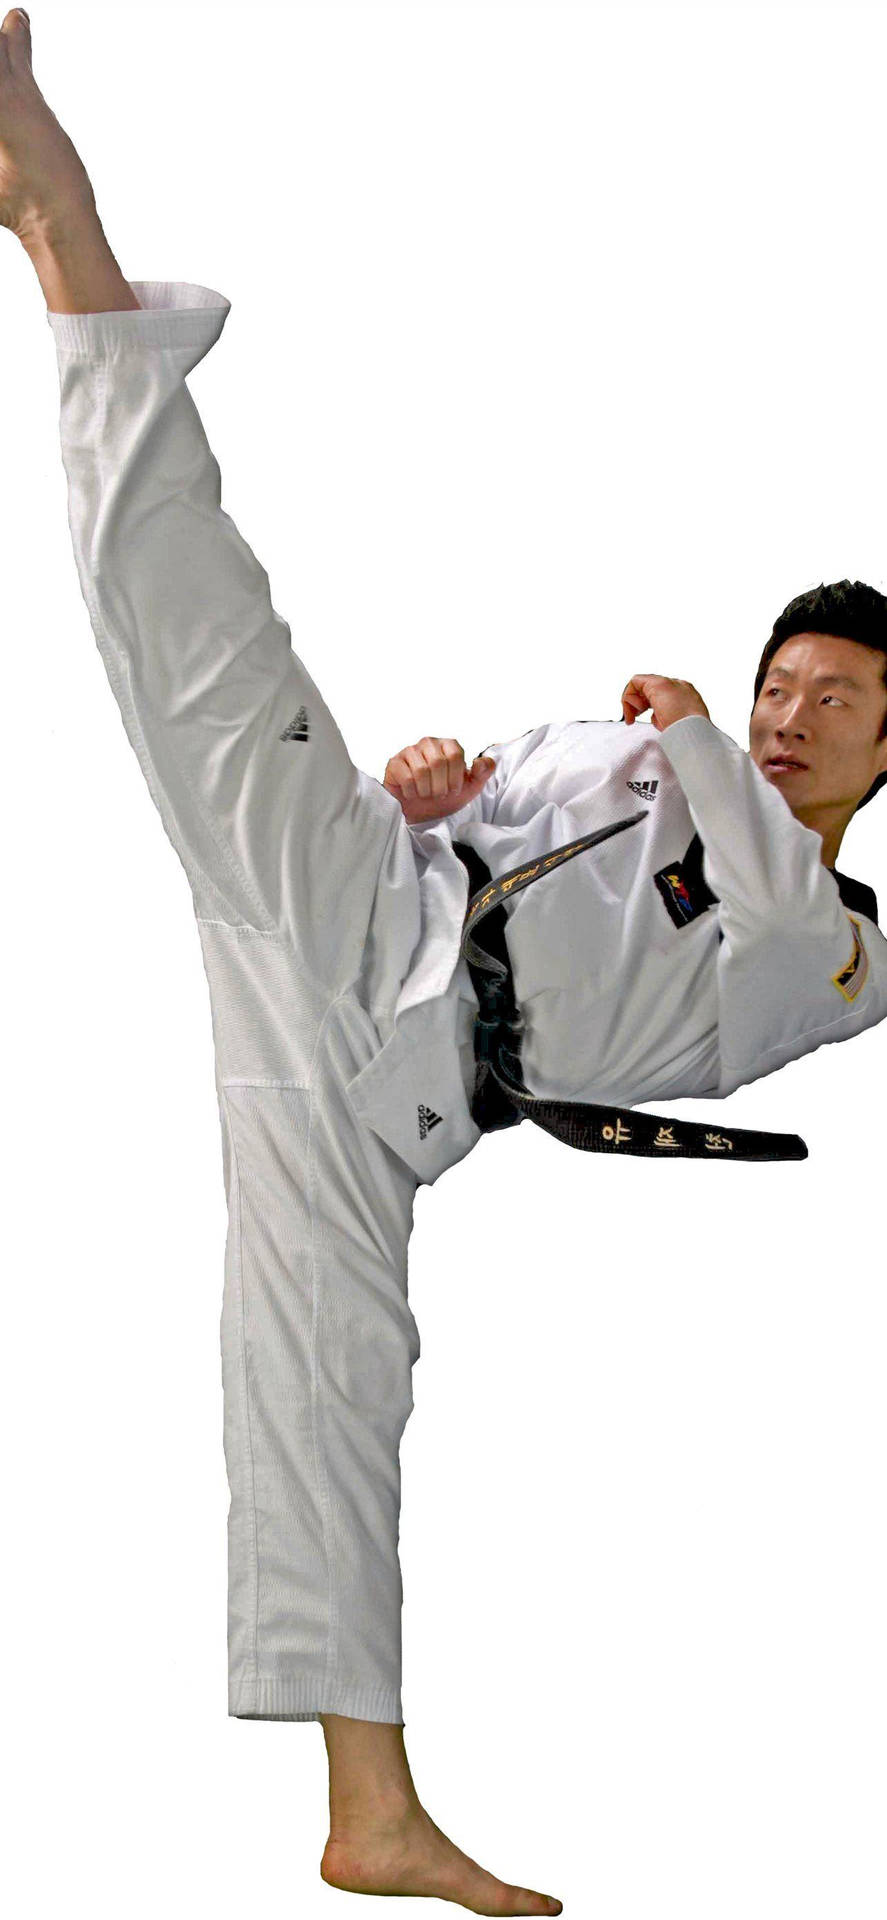 Black Belter Taekwondo Athlete Sport Illustration Wallpaper